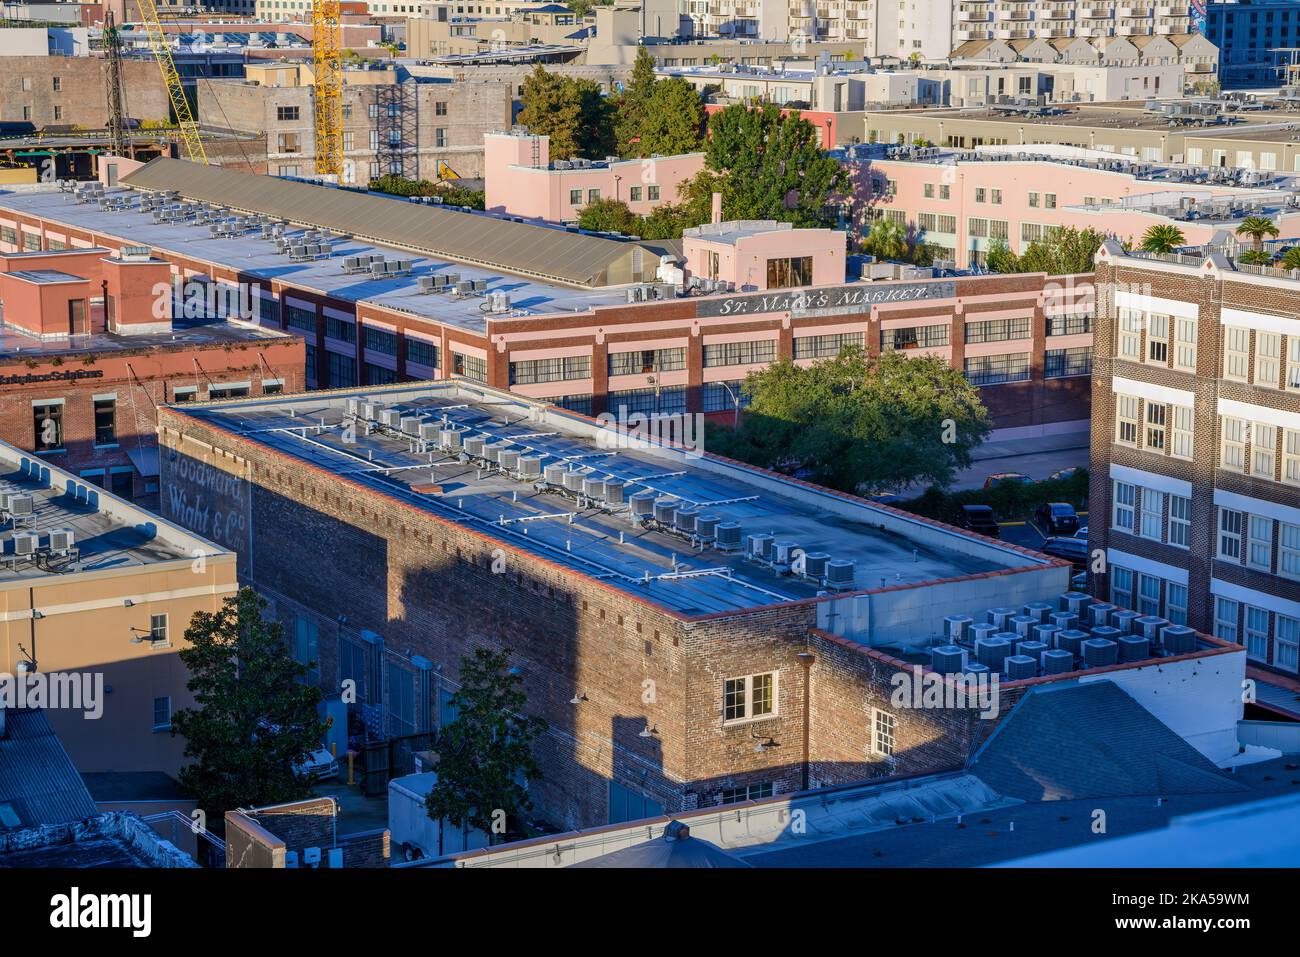 NEW ORLEANS, LA, USA - 25 OTTOBRE 2022: Paesaggio urbano del quartiere dei magazzini con numerose unità di aria condizionata sui tetti Foto Stock